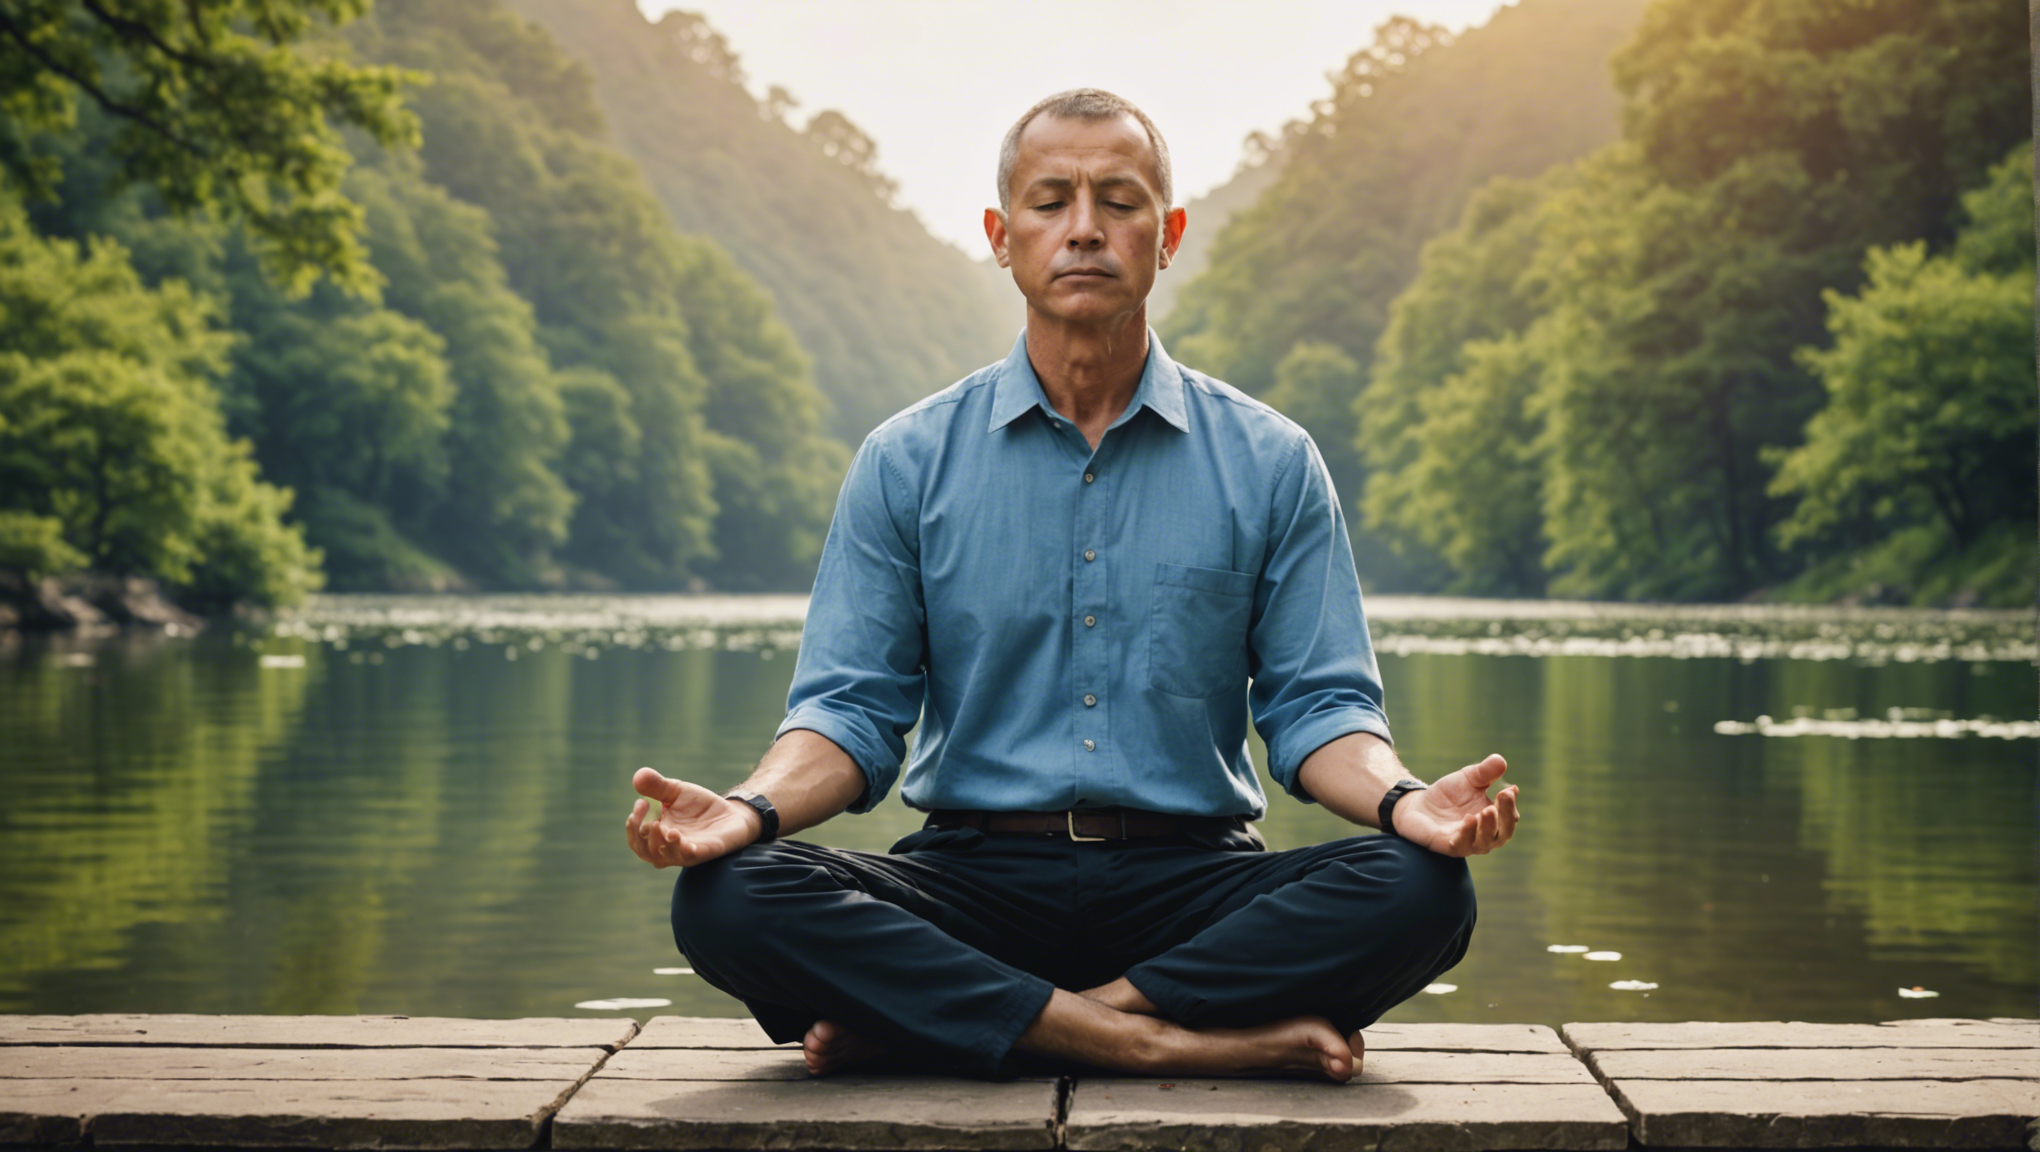 découvrez comment la méditation peut être un outil efficace pour surmonter la tristesse et retrouver un équilibre émotionnel grâce à notre article informatif.